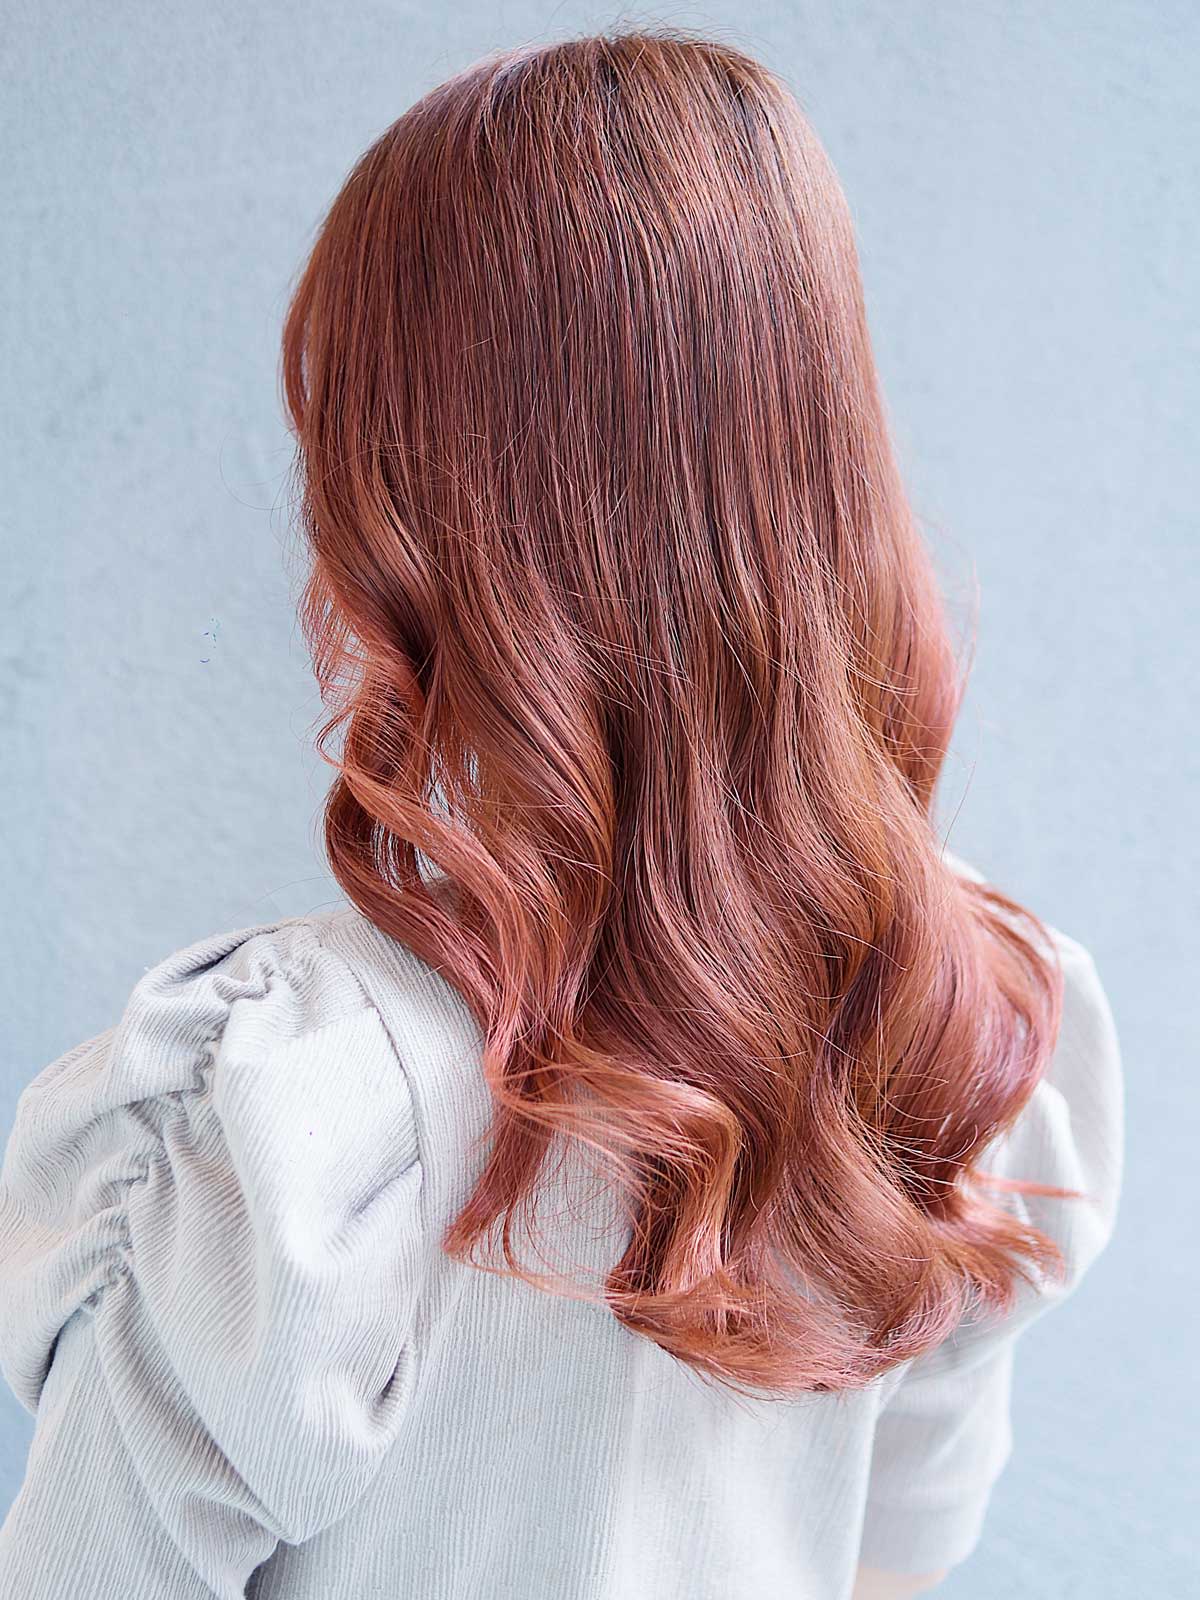 Ve-nus 宇品店【ヴィーナス ウジナテン】のスタイル紹介。艶髪ピンクブラウン